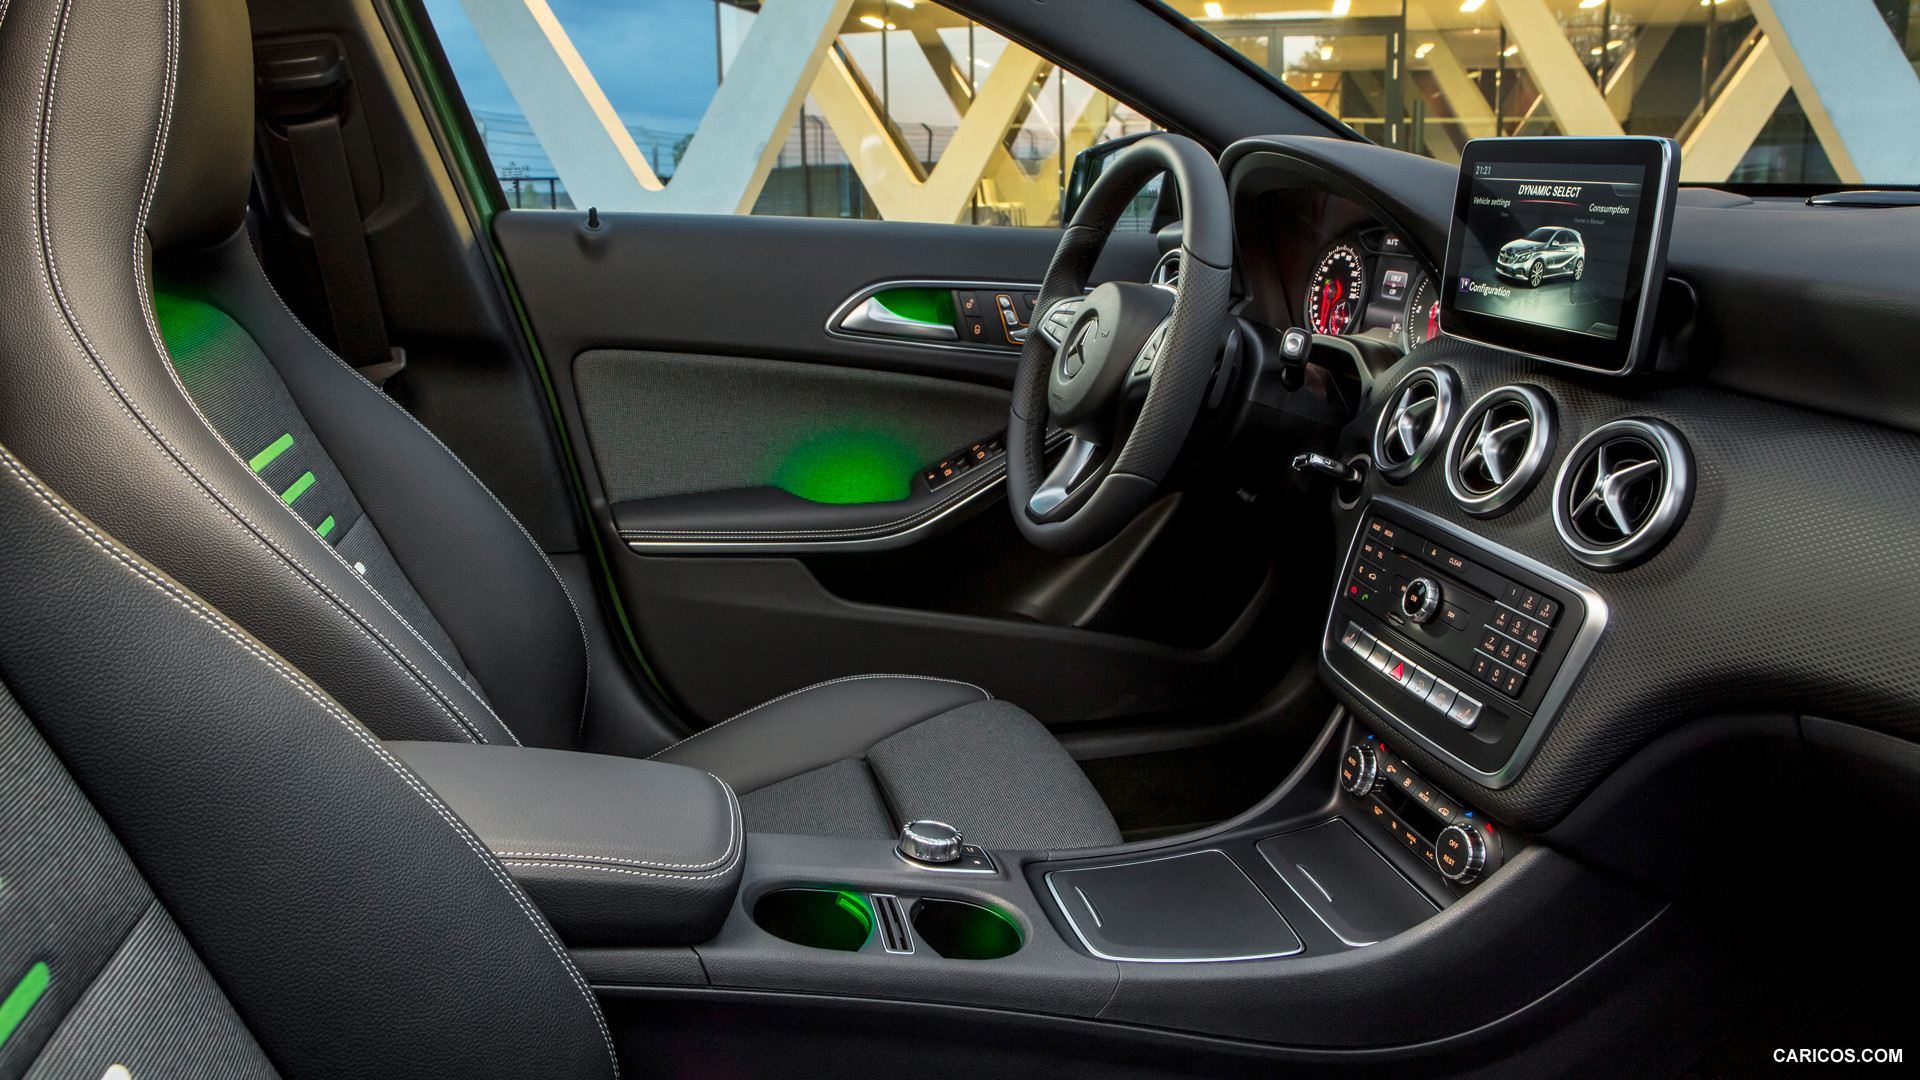 2016 Mercedes-Benz A-Class A 220d 4MATIC (Black / Green) - Interior, #41 of 43